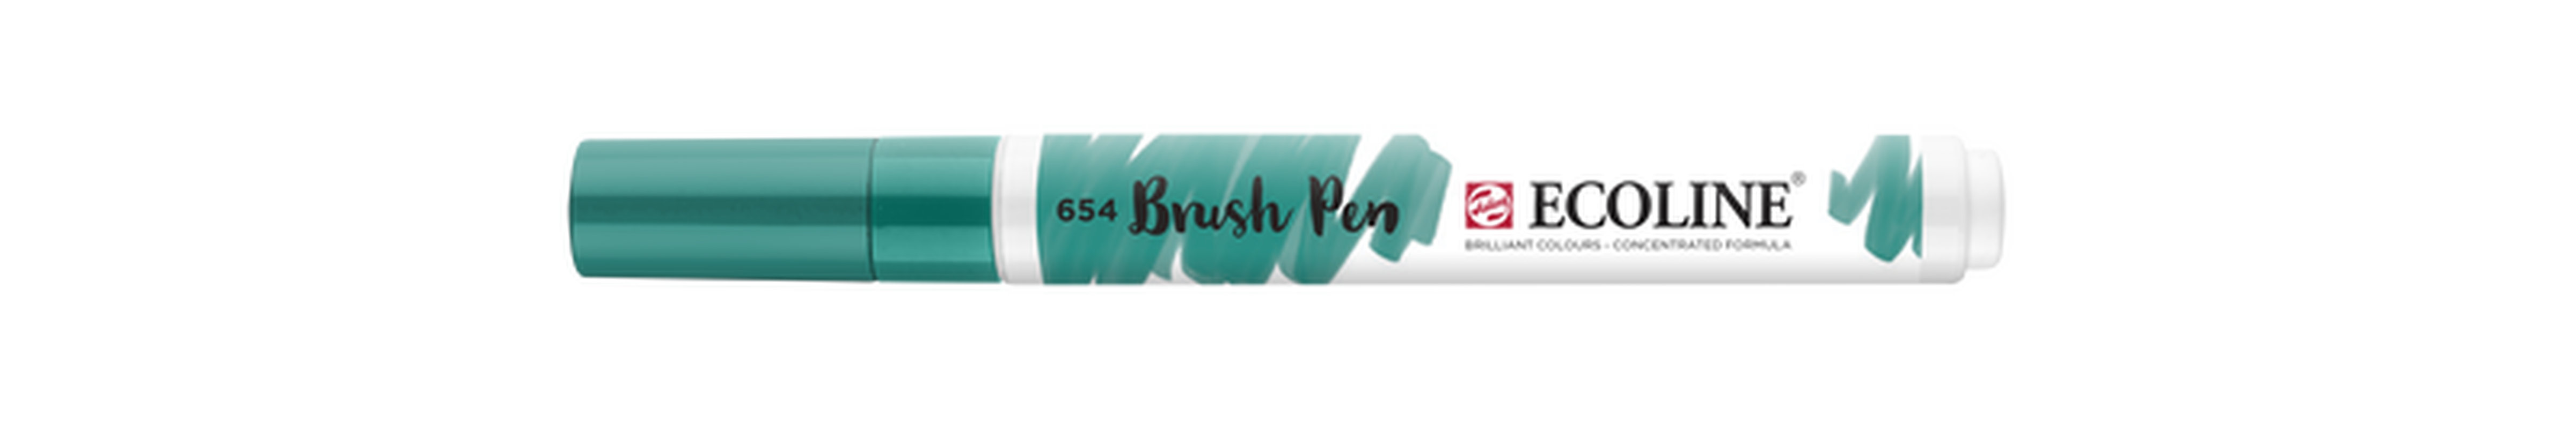 Talens Brush Pen Ecoline Number 654 Color Pine Green